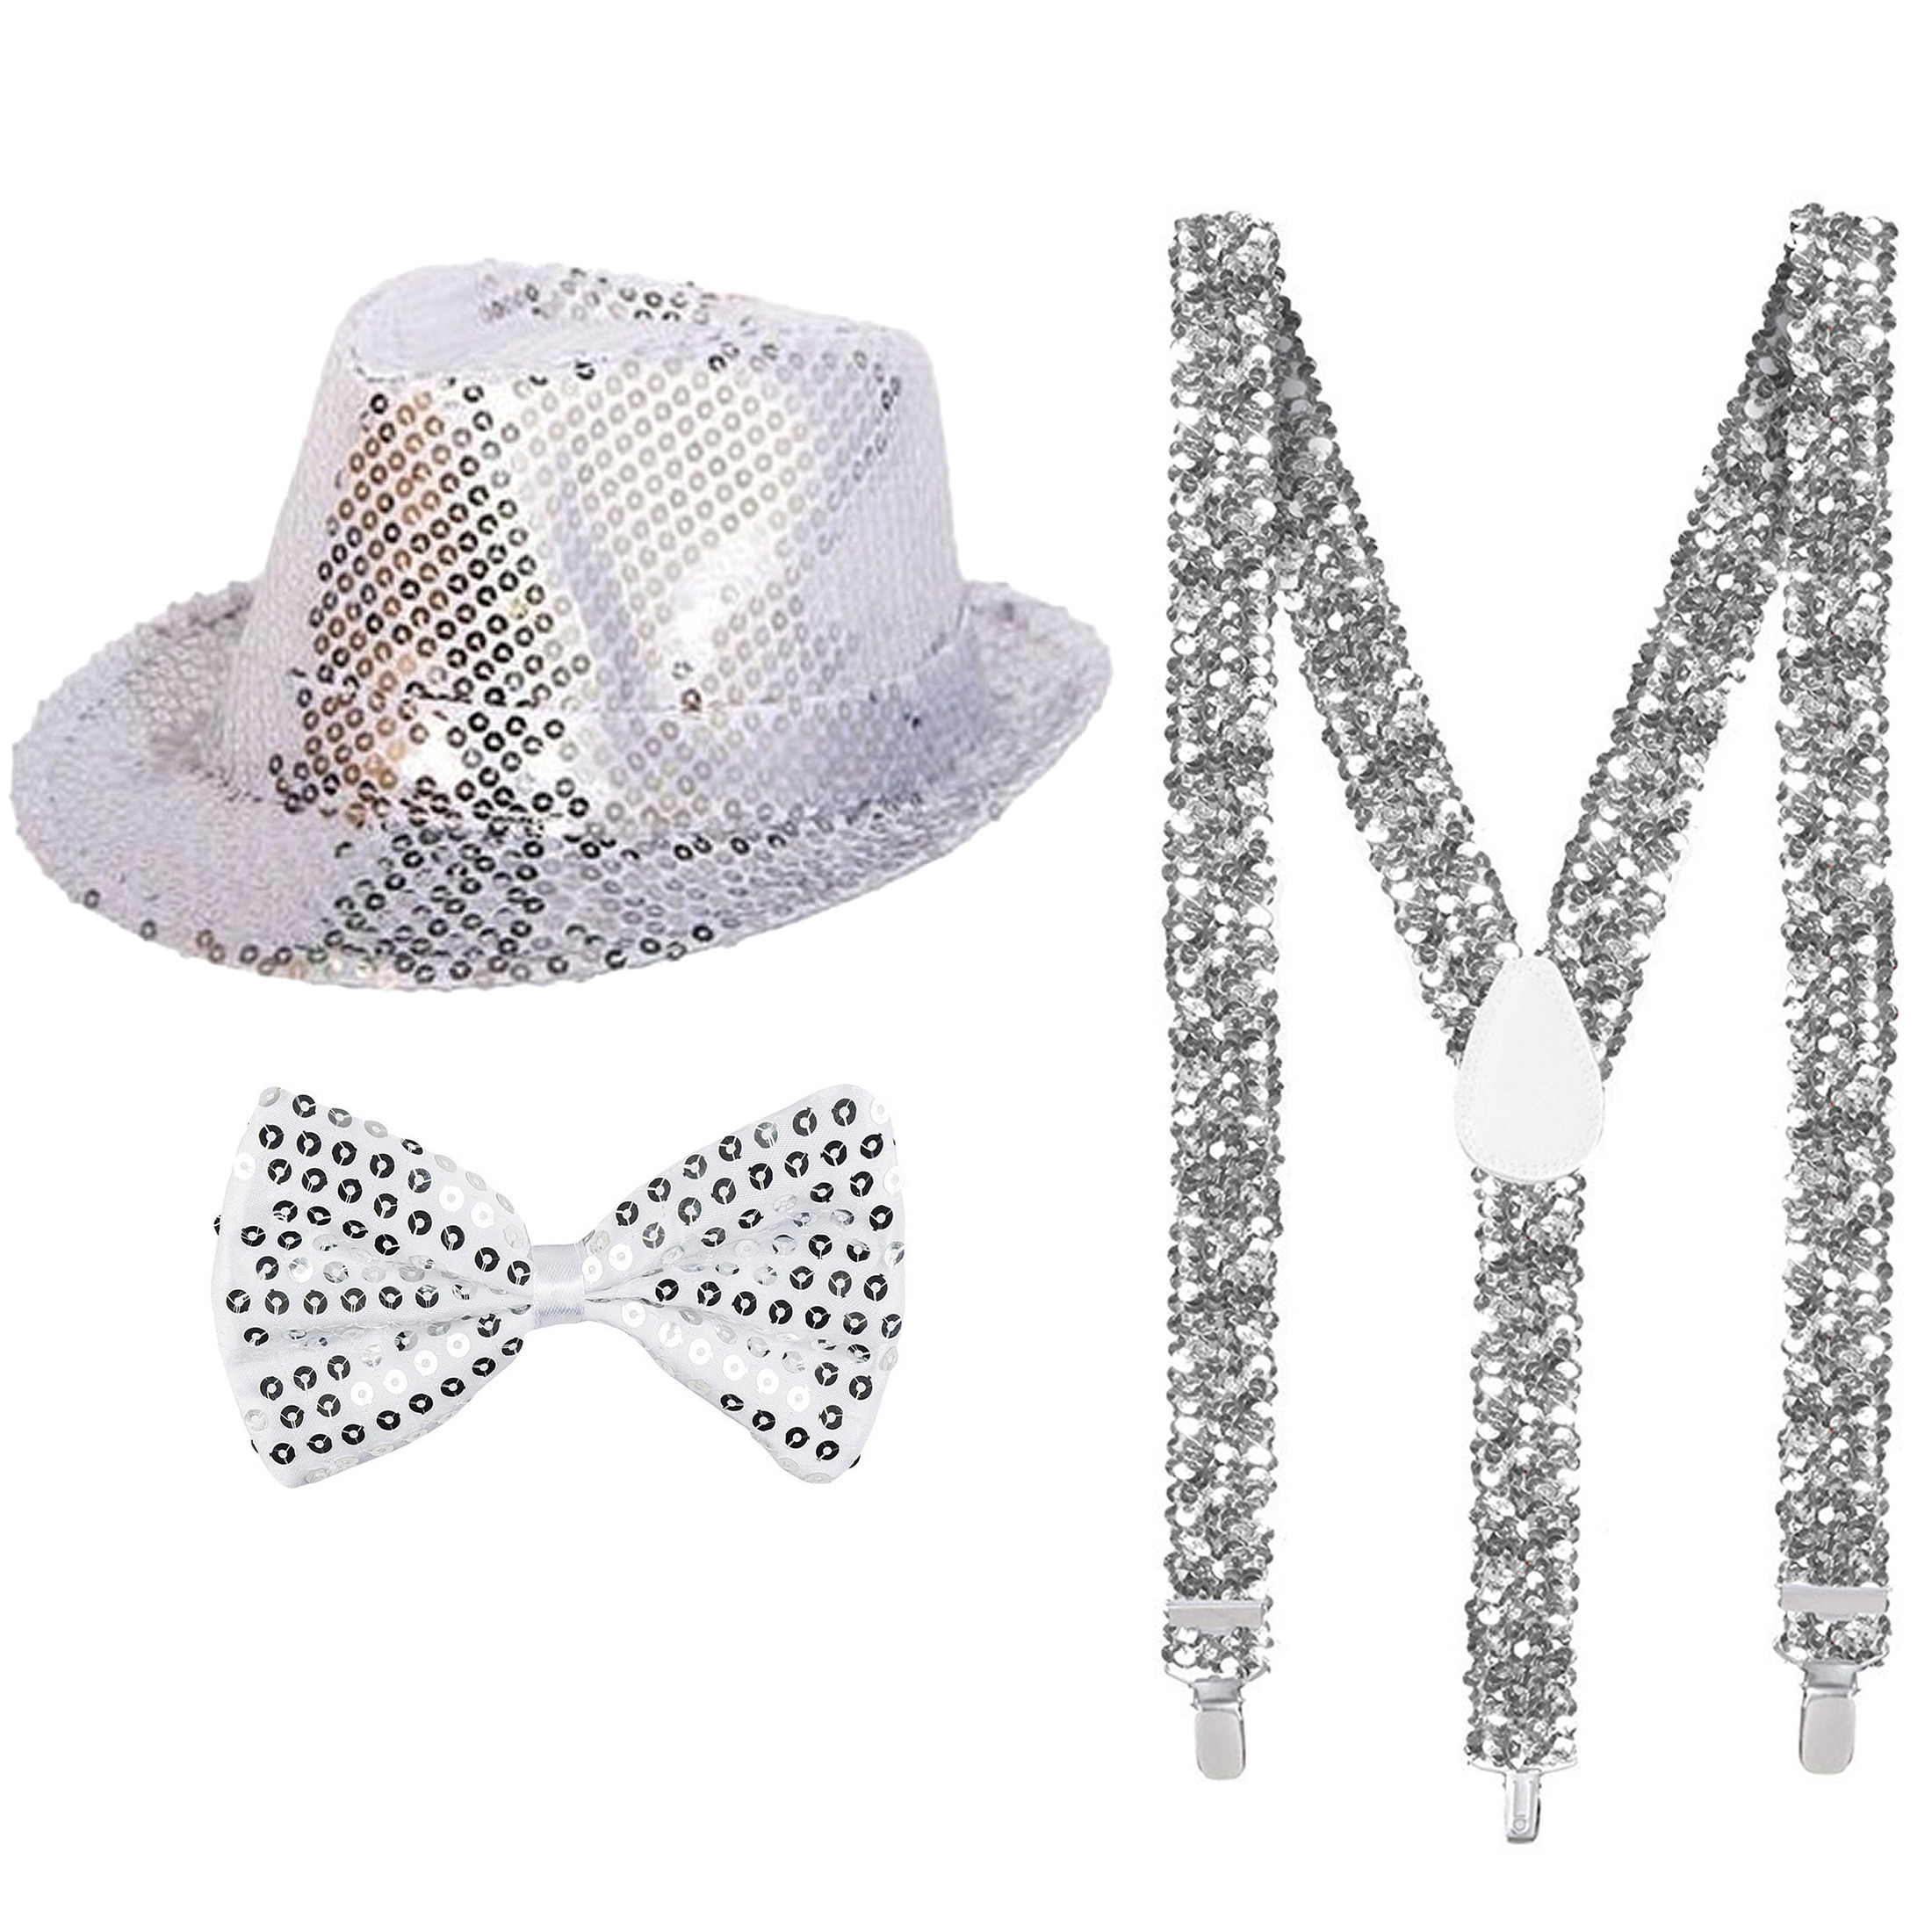 Toppers Carnaval verkleed set hoed-strikje-bretels zilver glitters